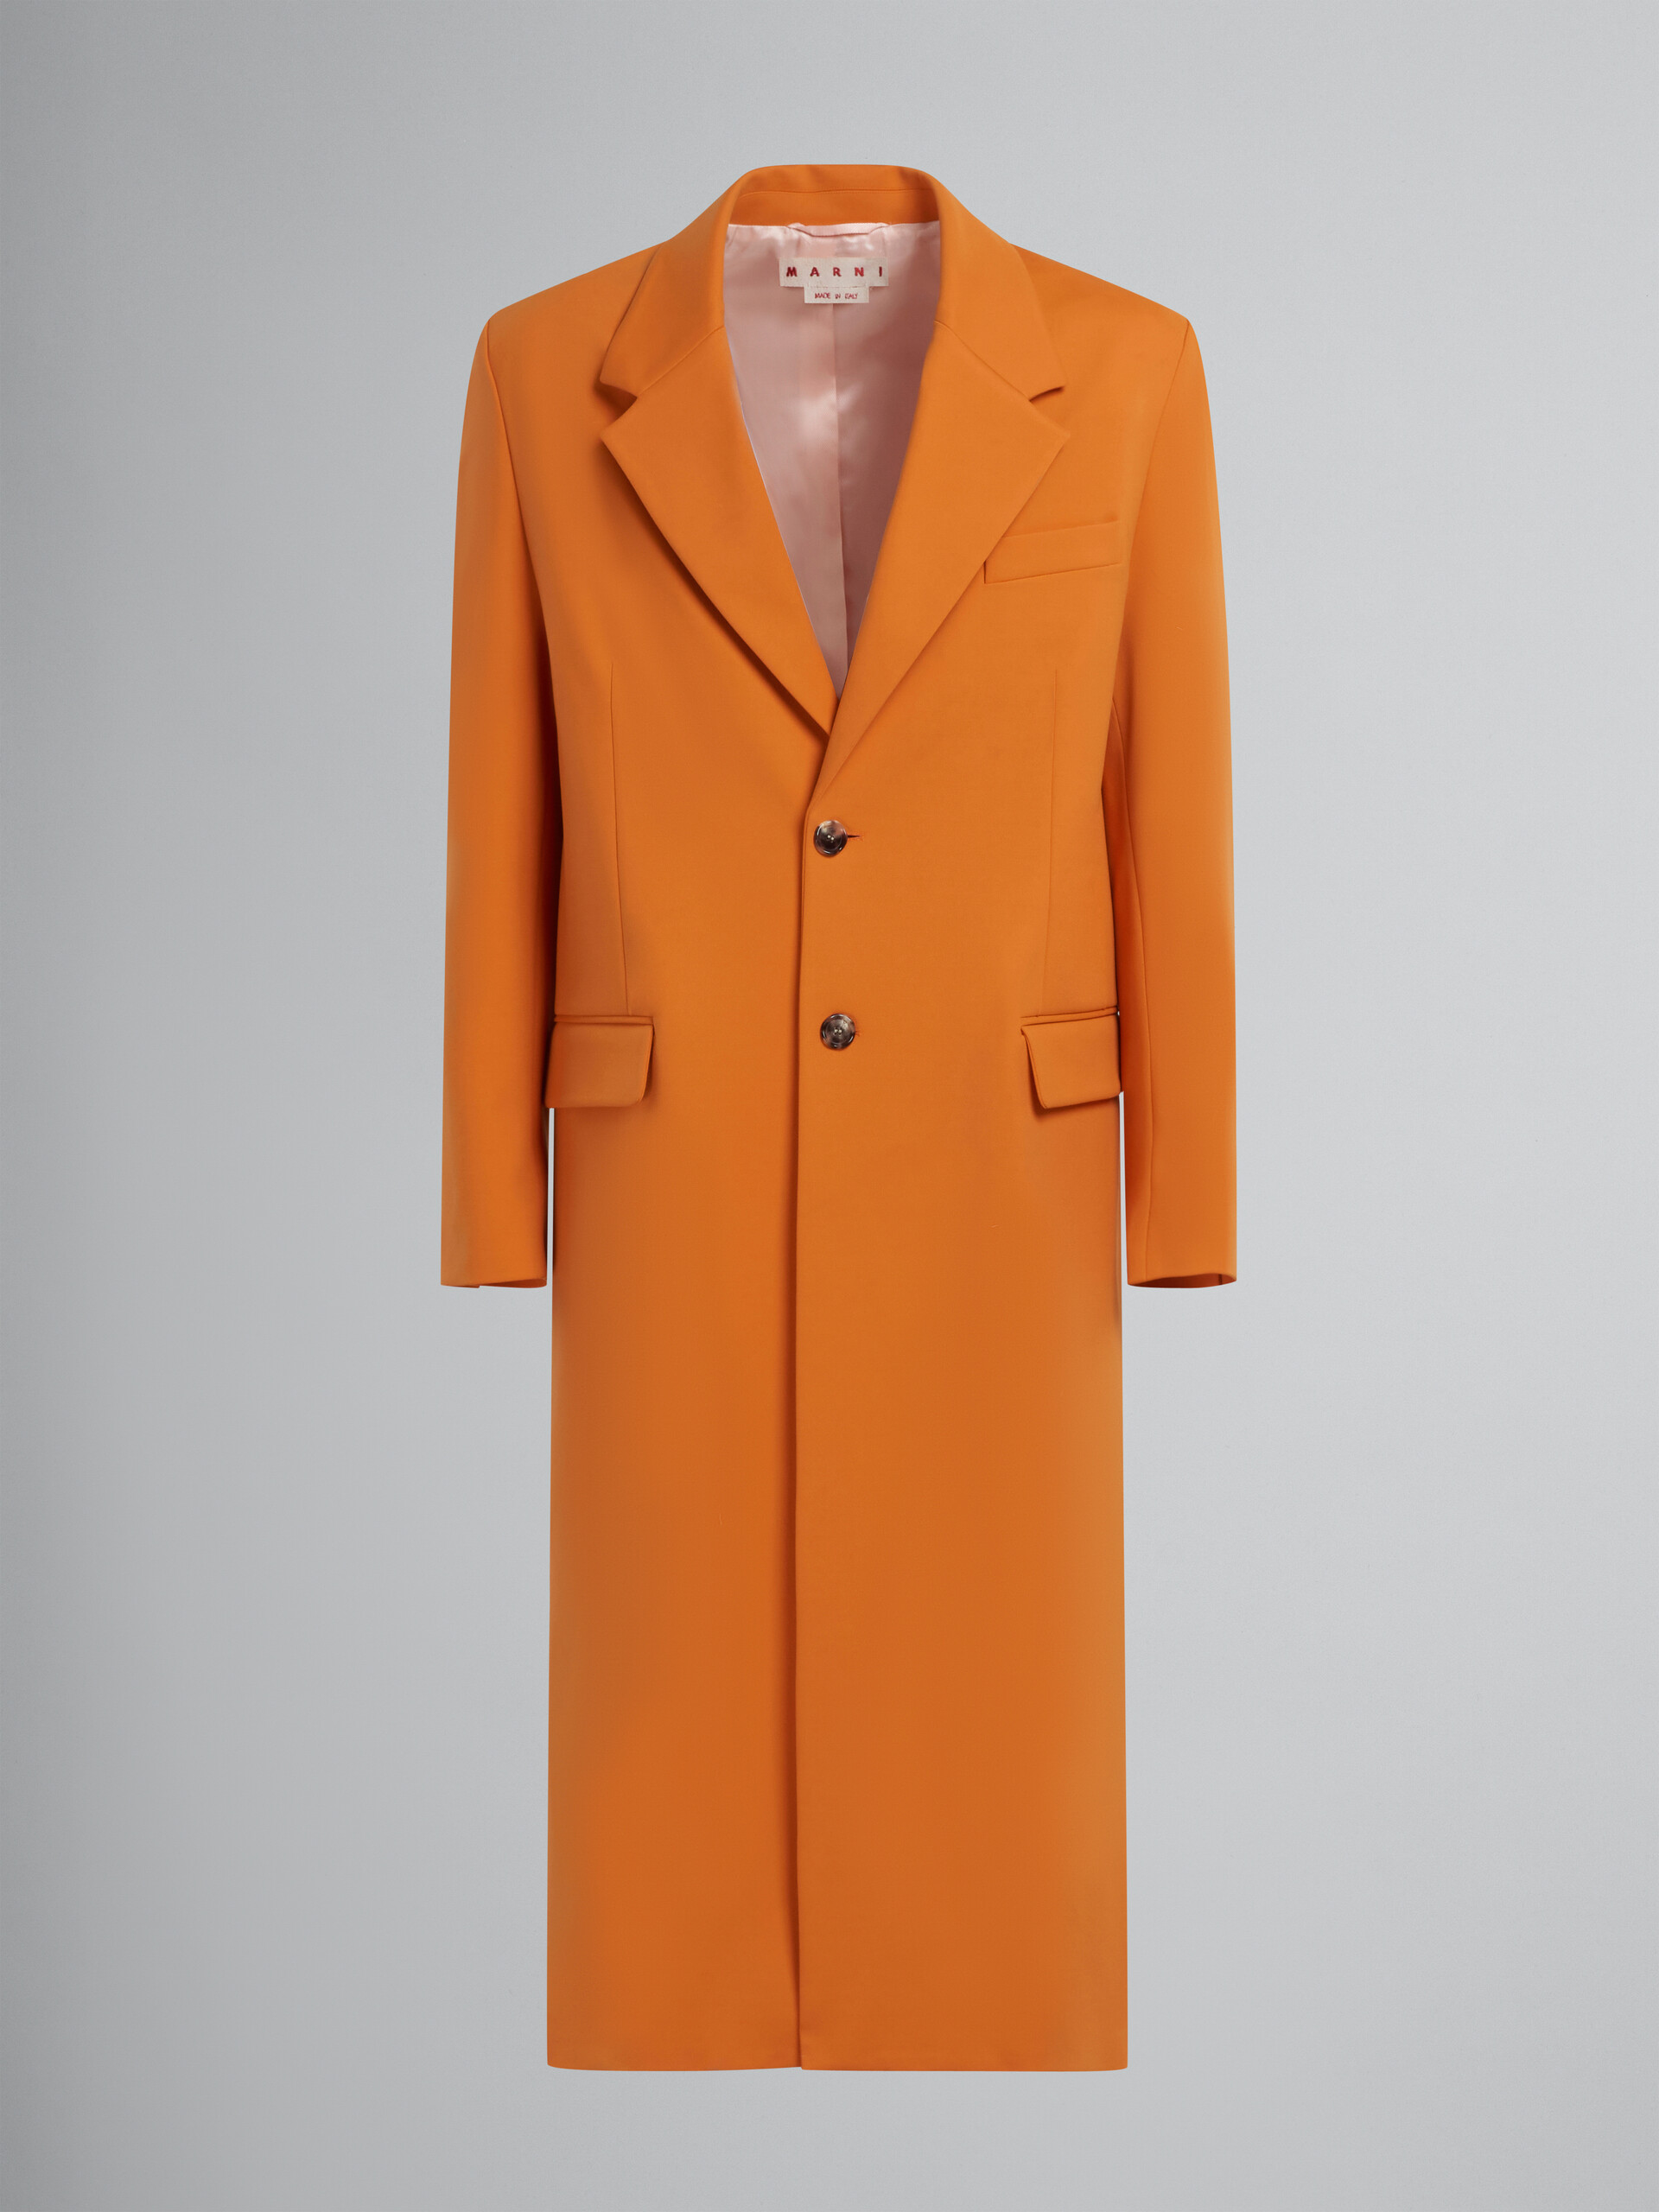 Orange single-breasted jersey coat - Coat - Image 1